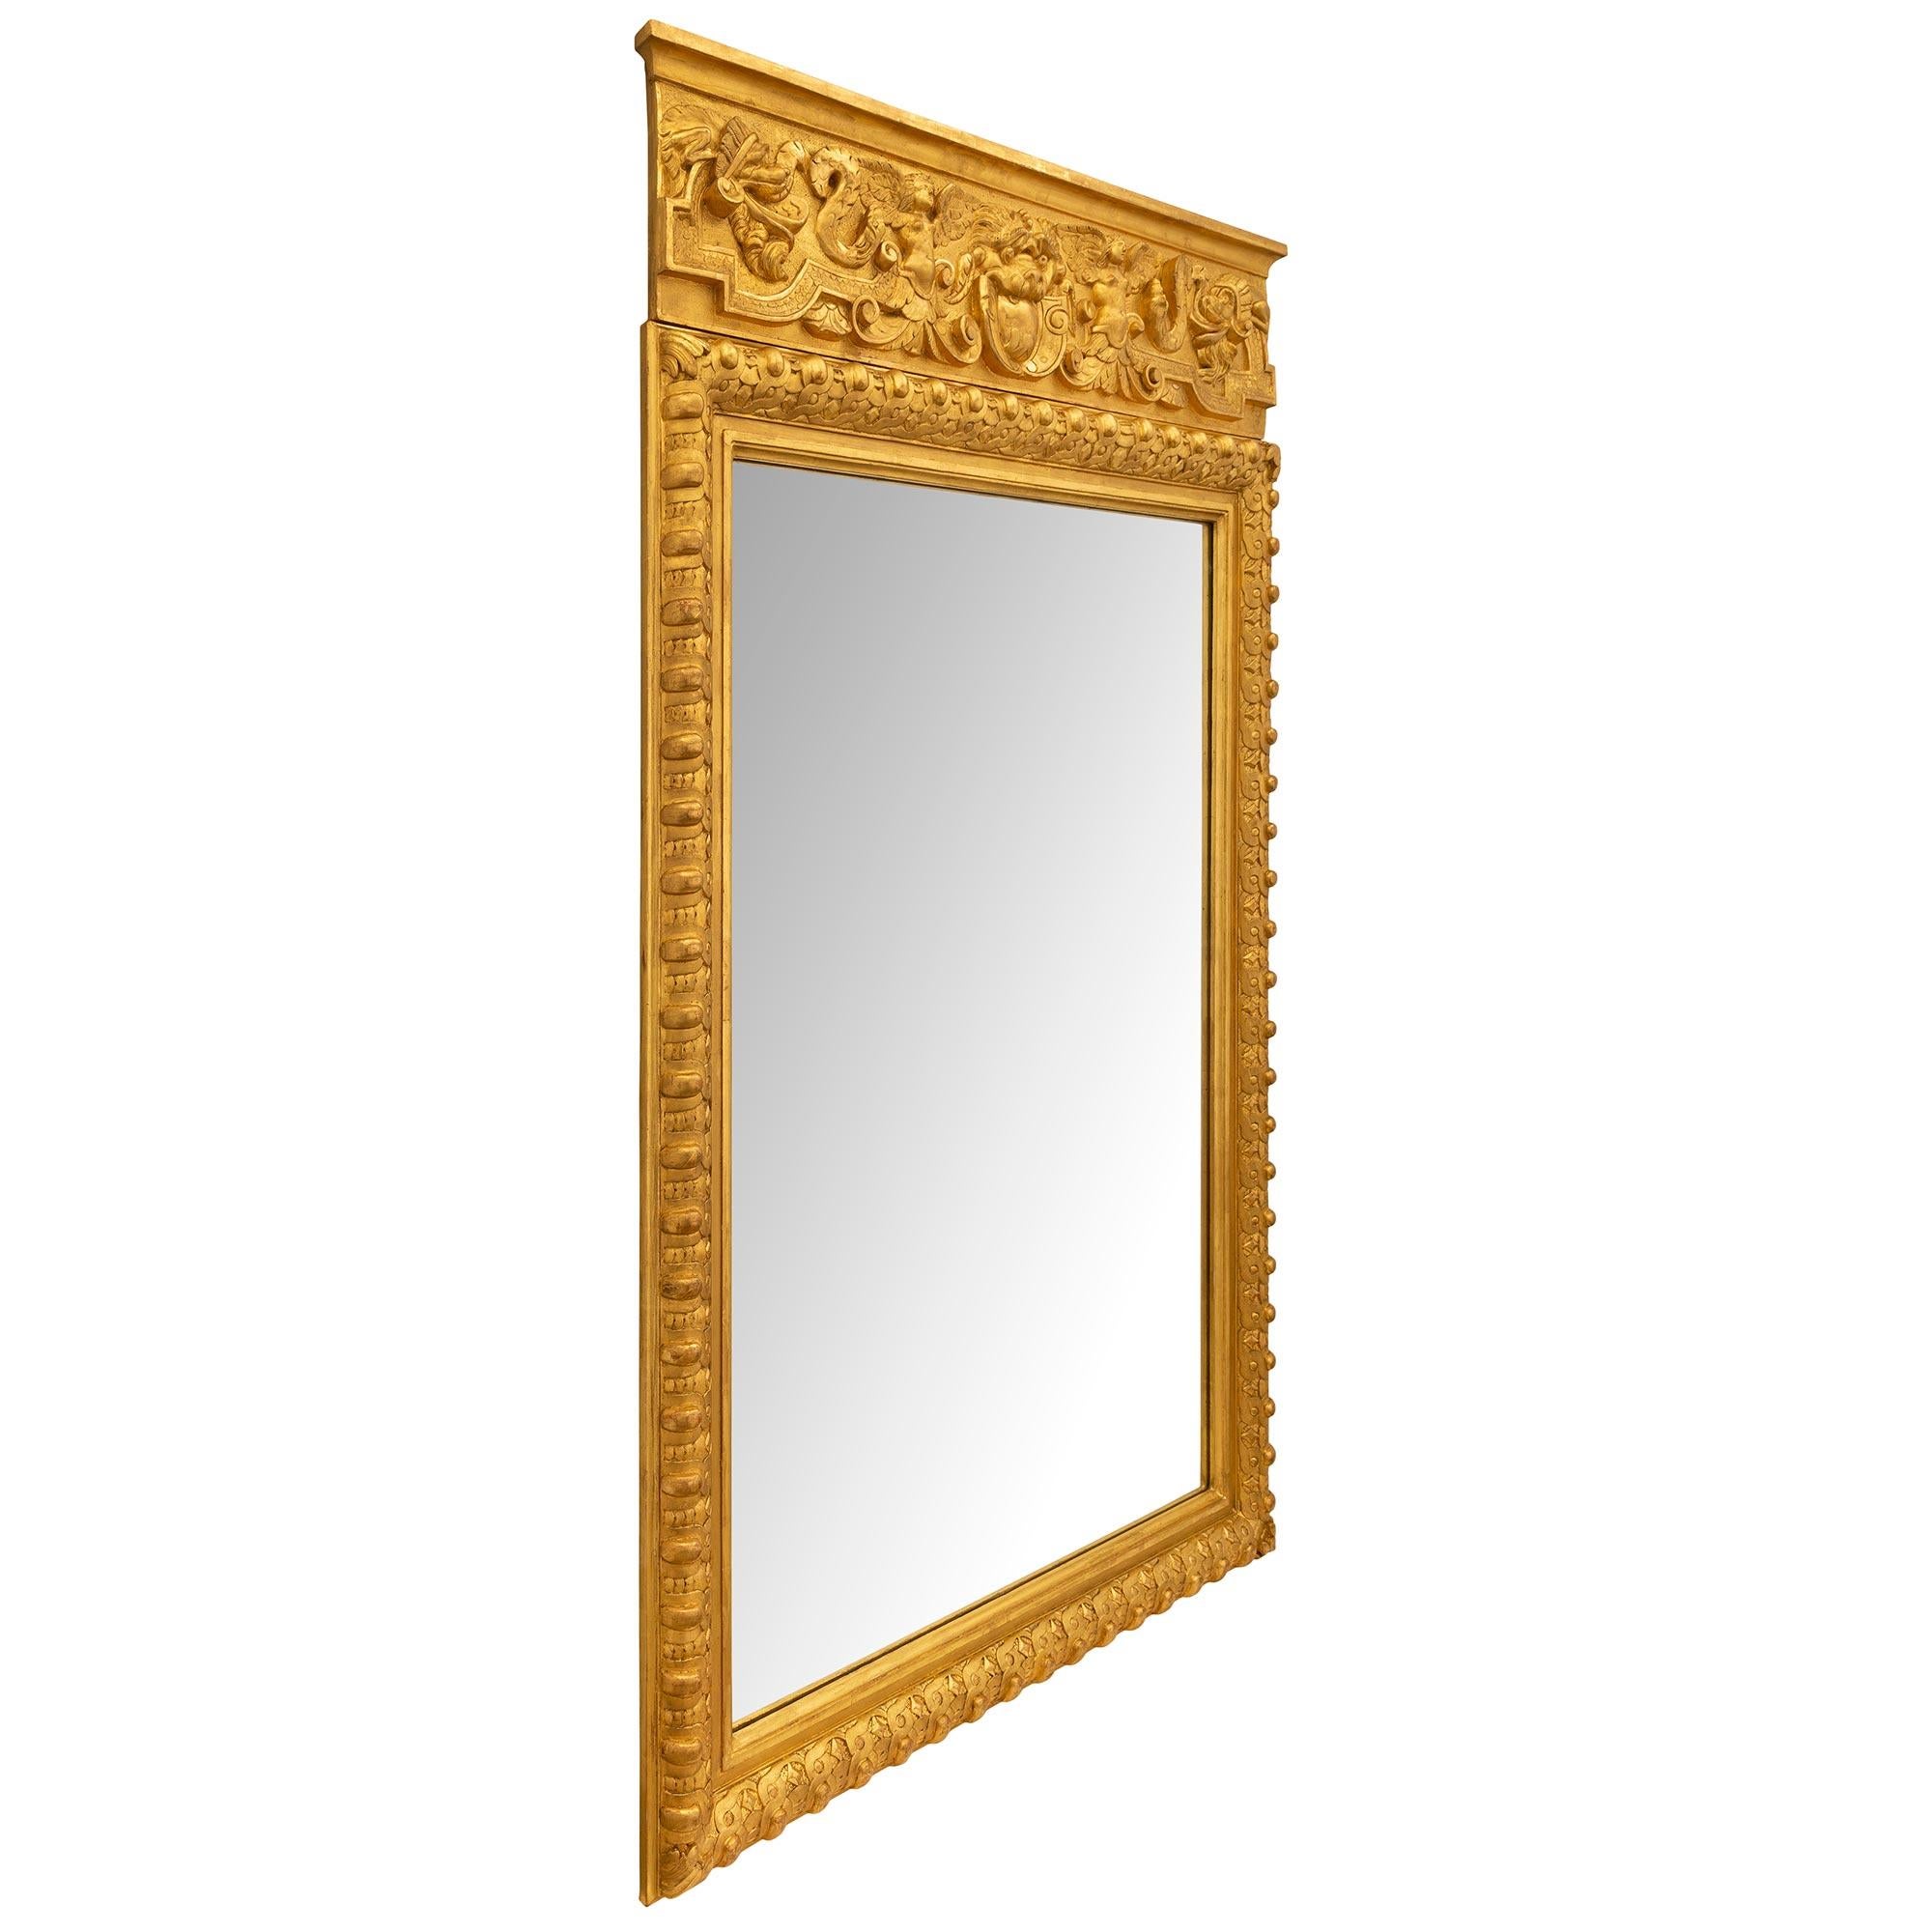 Remarquable miroir en bois doré de style néoclassique italien du XIXe siècle. Le miroir conserve sa plaque d'origine encadrée d'une fine bordure mouchetée et d'une exceptionnelle bordure enveloppante avec les motifs les plus décoratifs de Les Oves